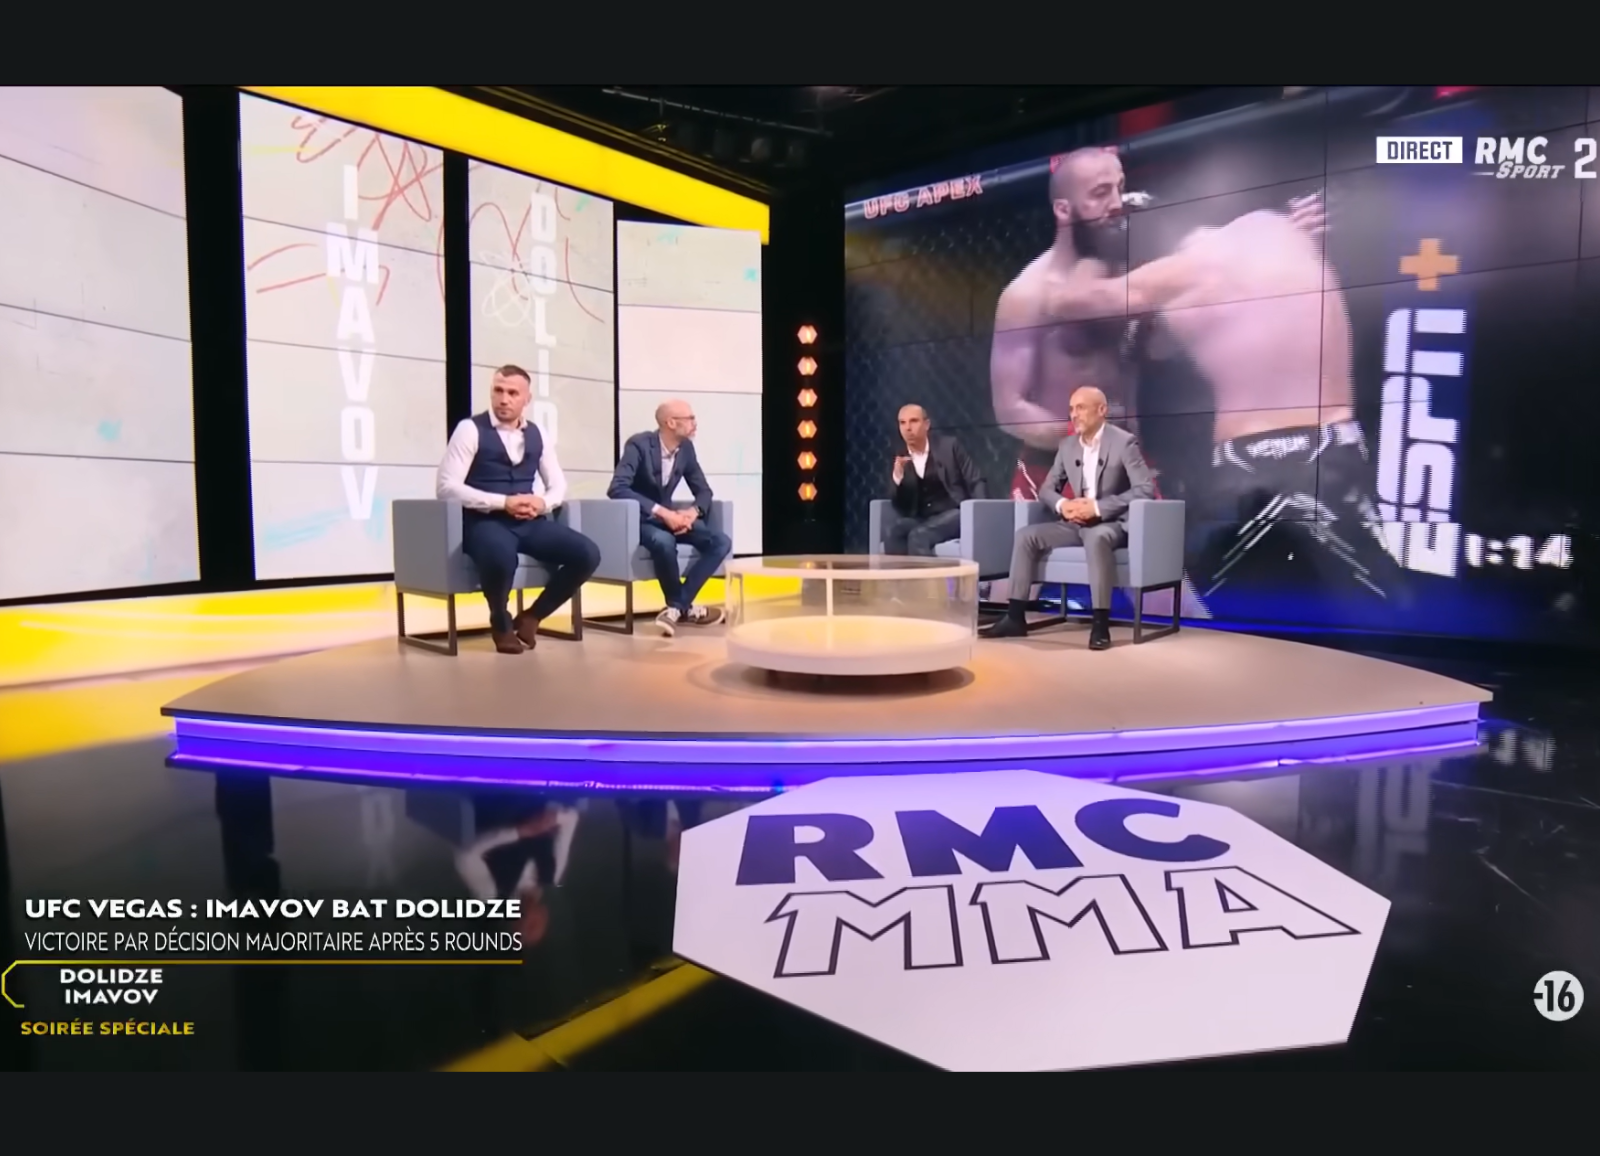 Capture d'écran de l'émission spéciale après le combat de MMA opposant Roman Dolidze à Nassourdine Imavov